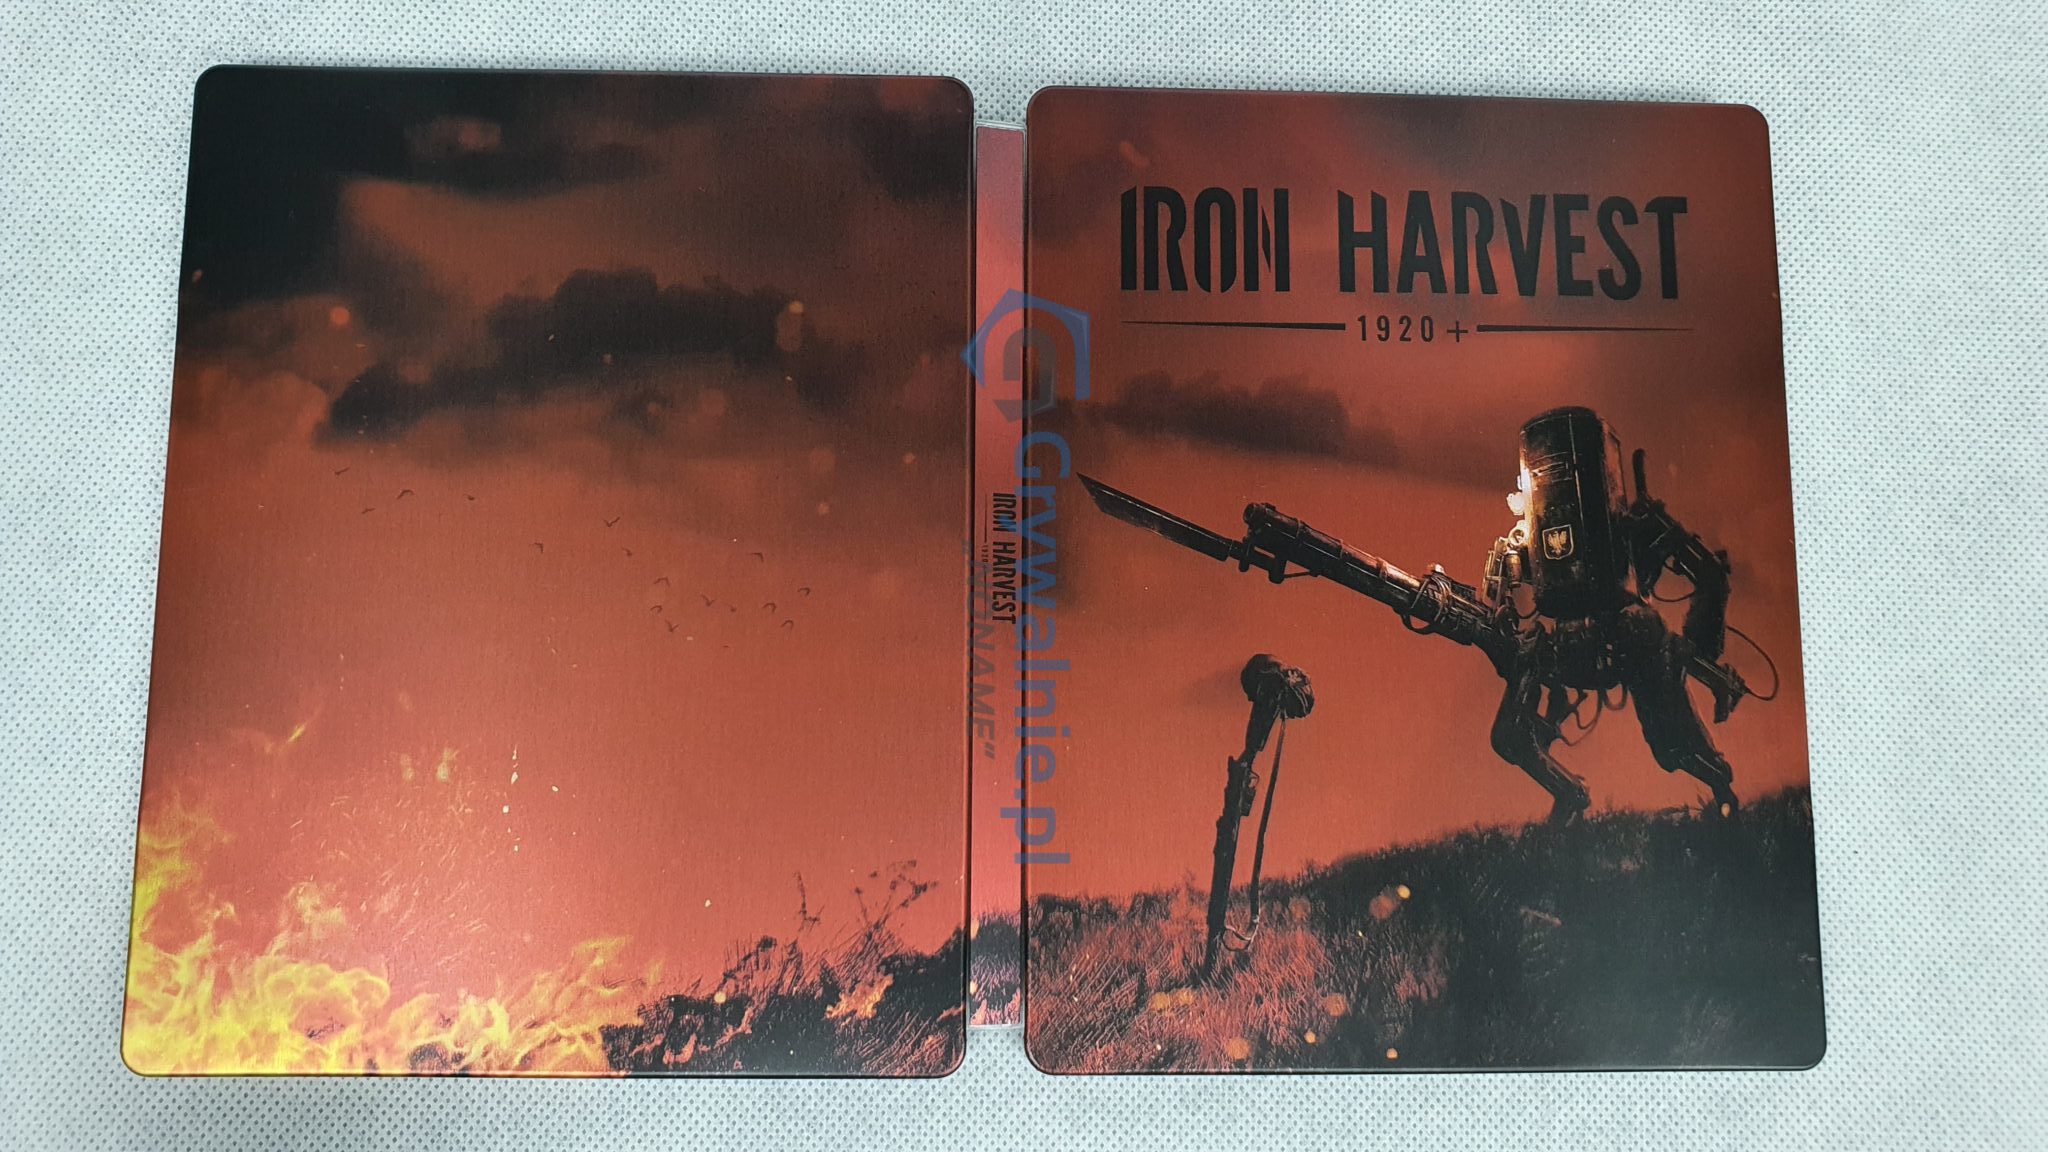 Steelbook Iron Harvest